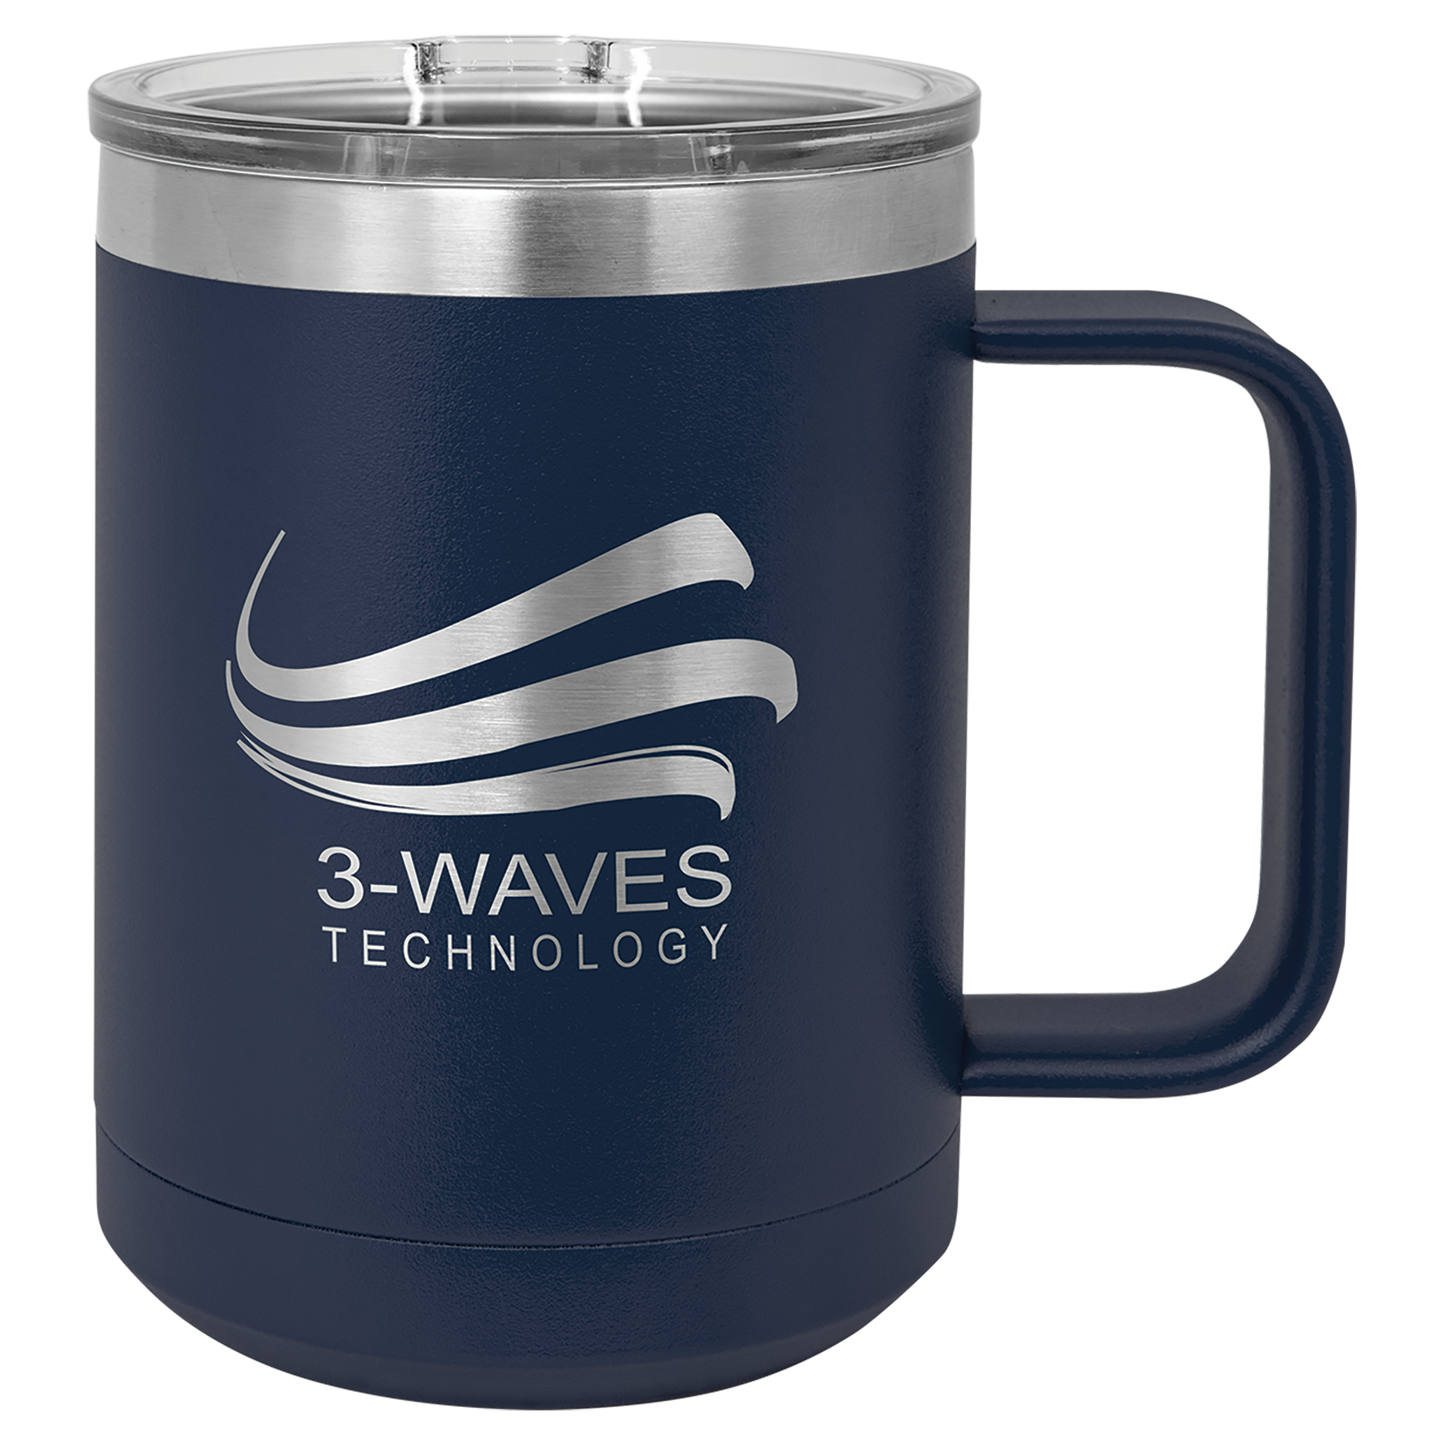 Custom 15 oz Coffee Mug